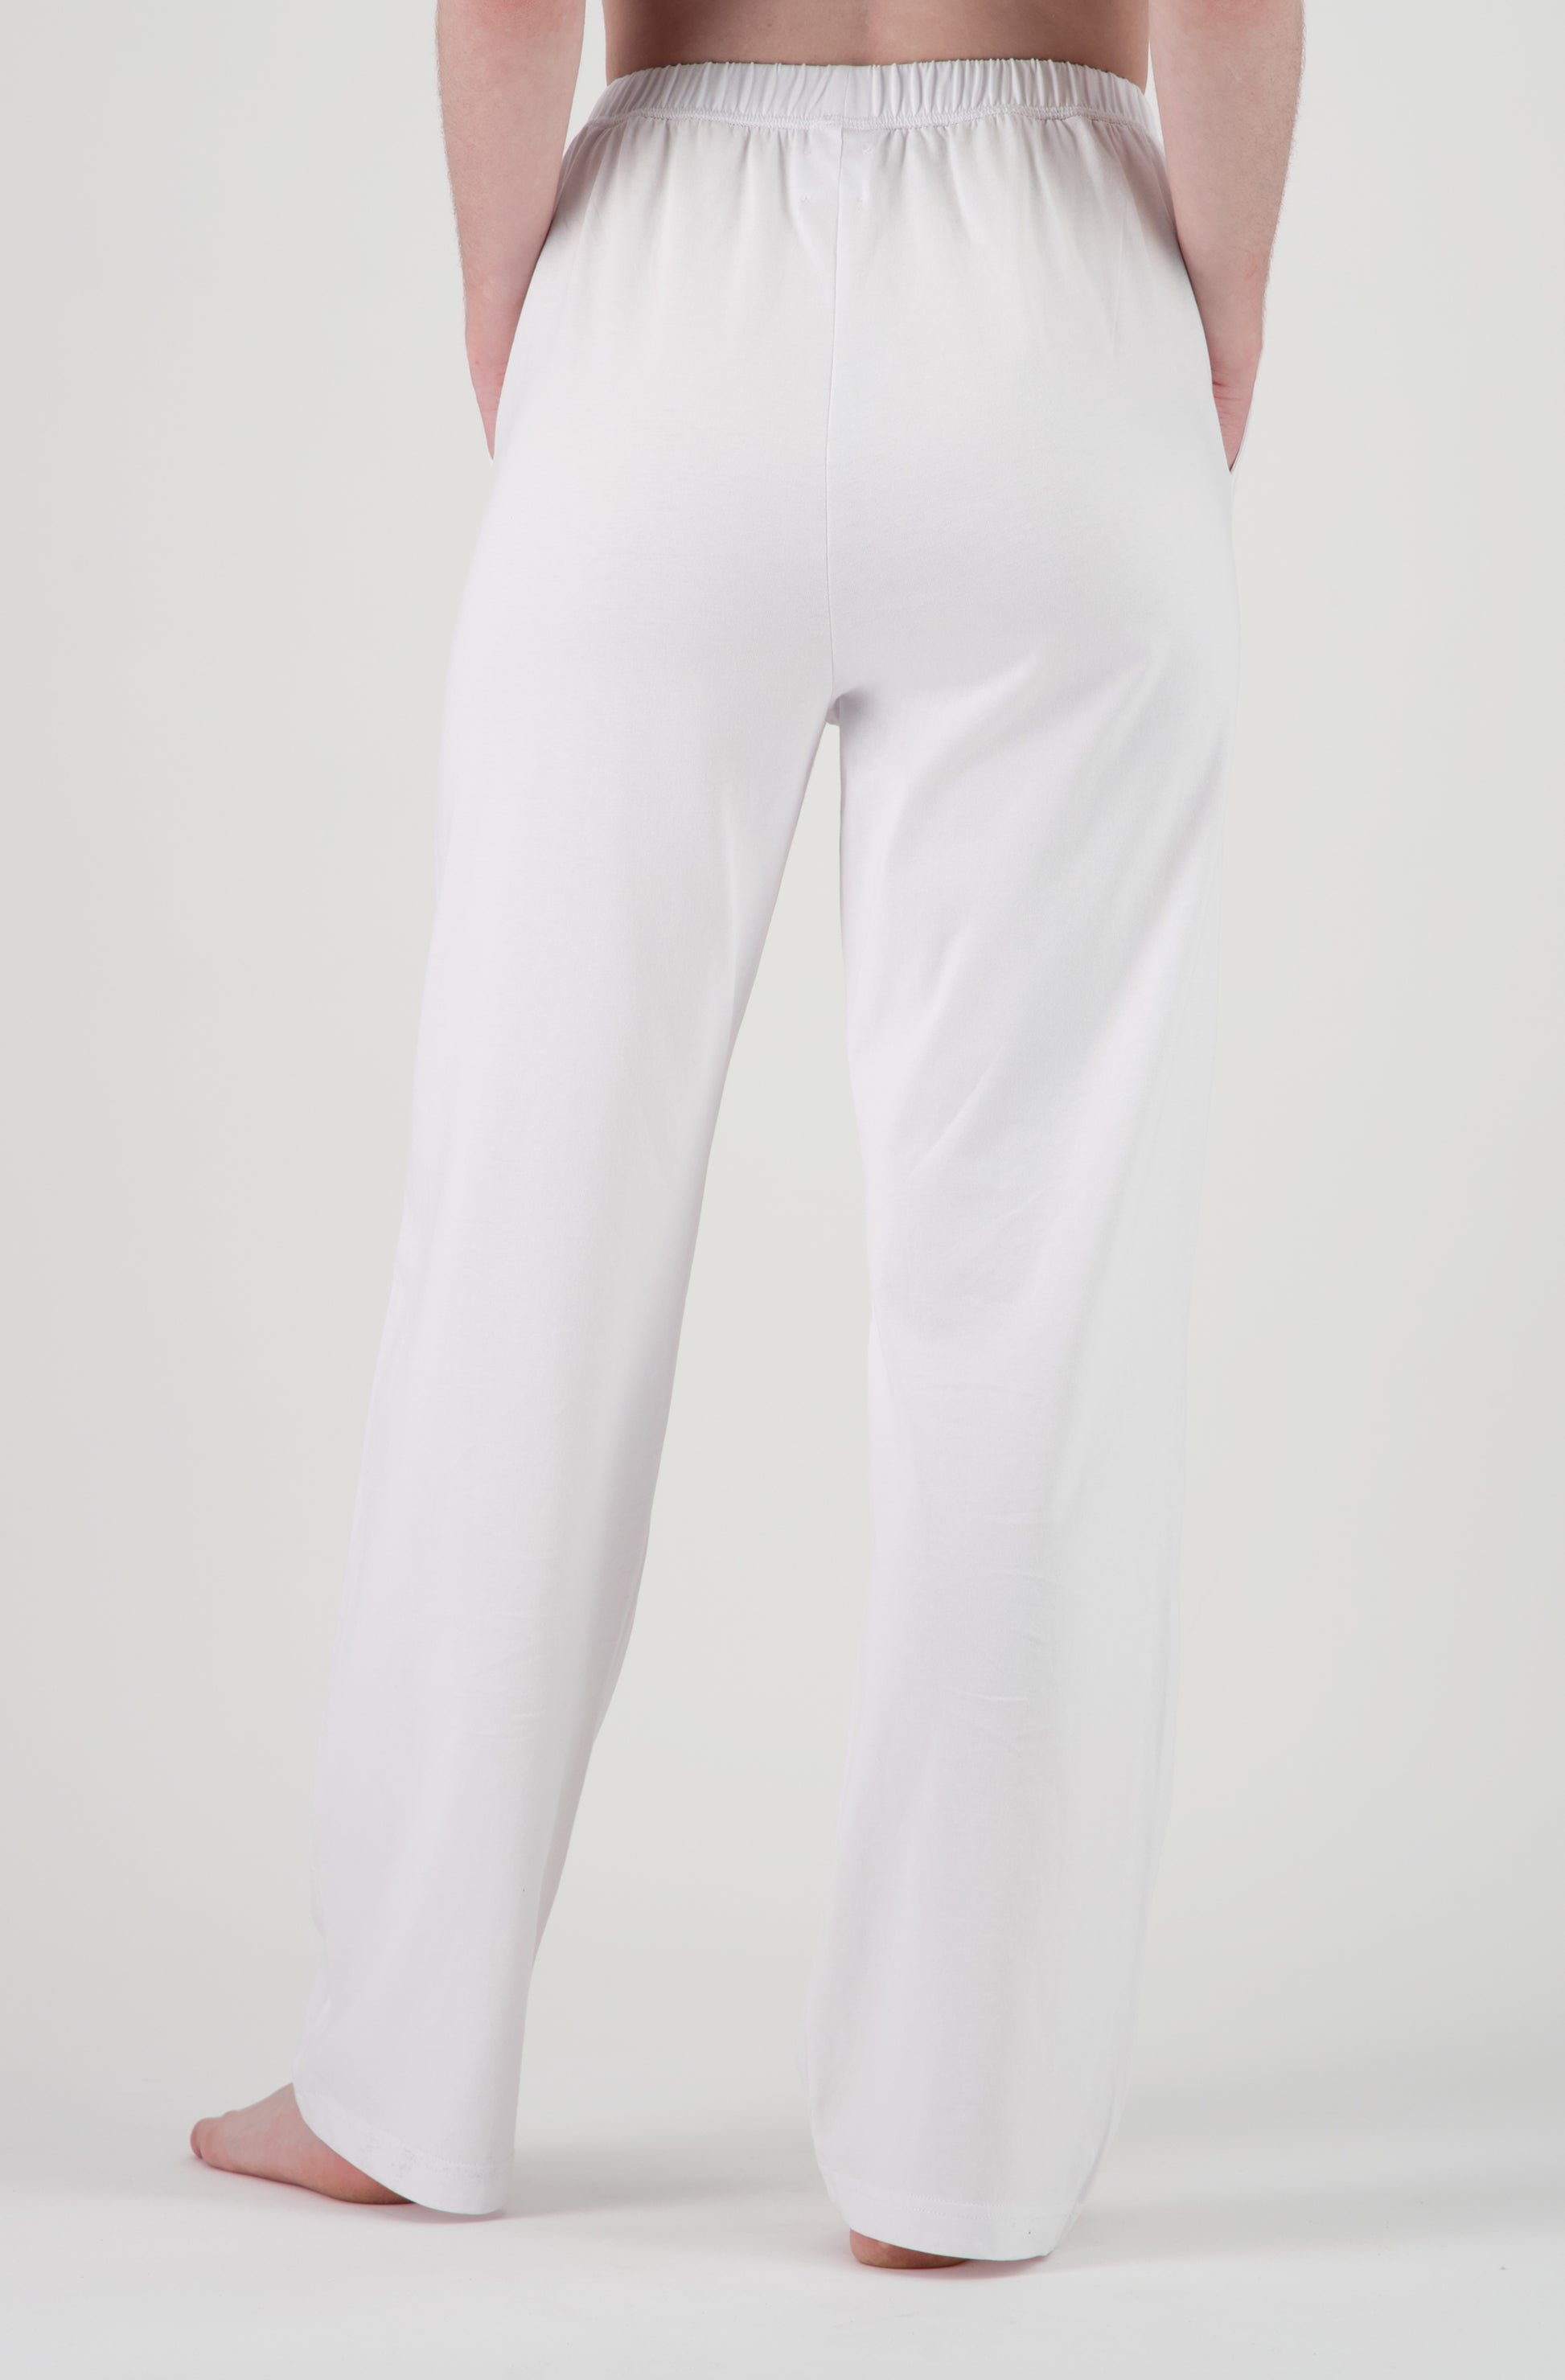 Le pantalon blanc de jour et de nuit en coton bio pour femme OMEAR, vue de dos, taille élastique